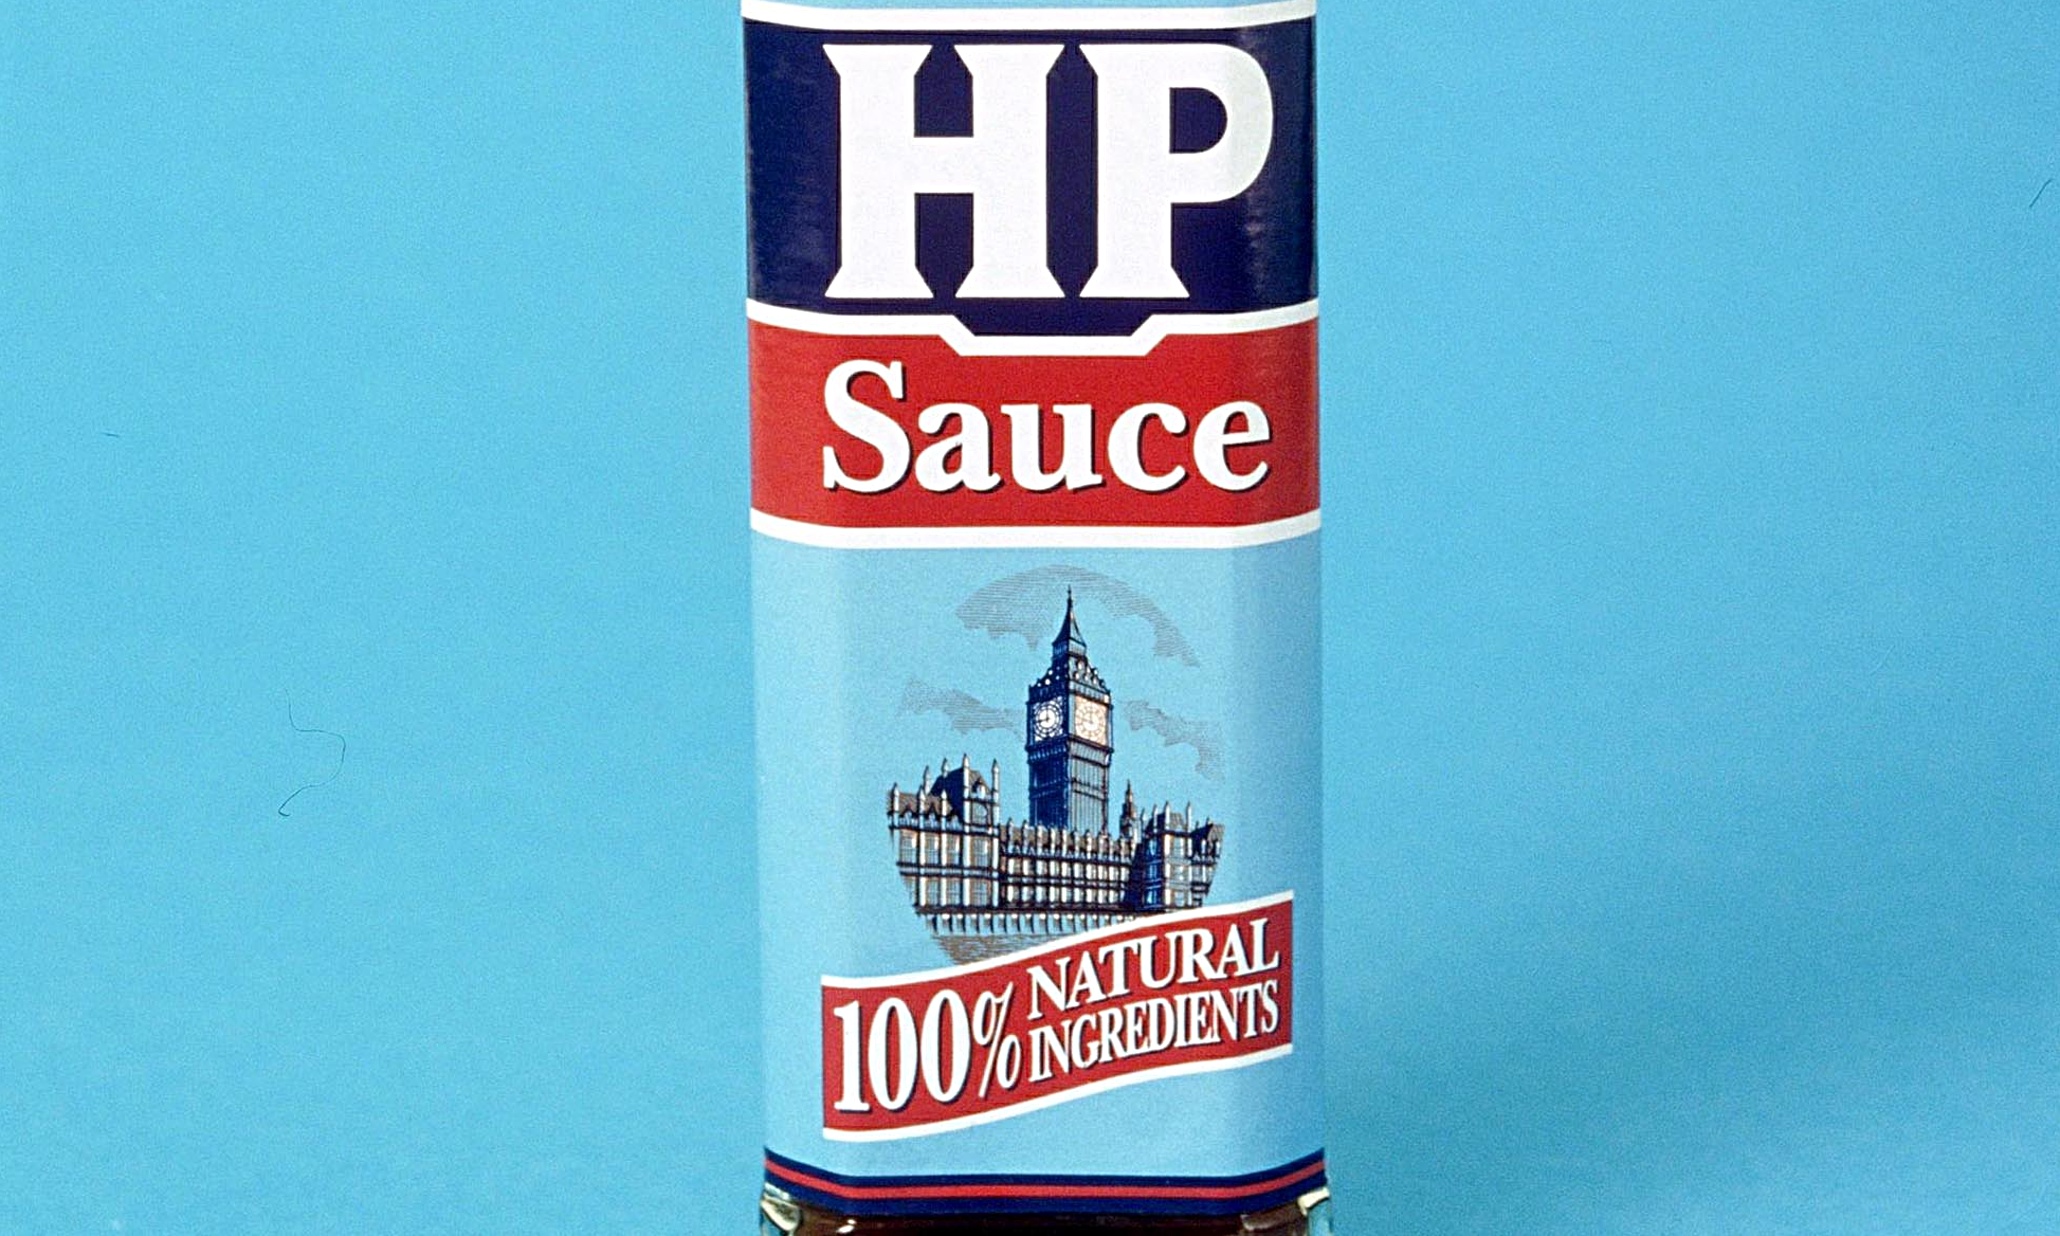 HP-sauce-009.jpg